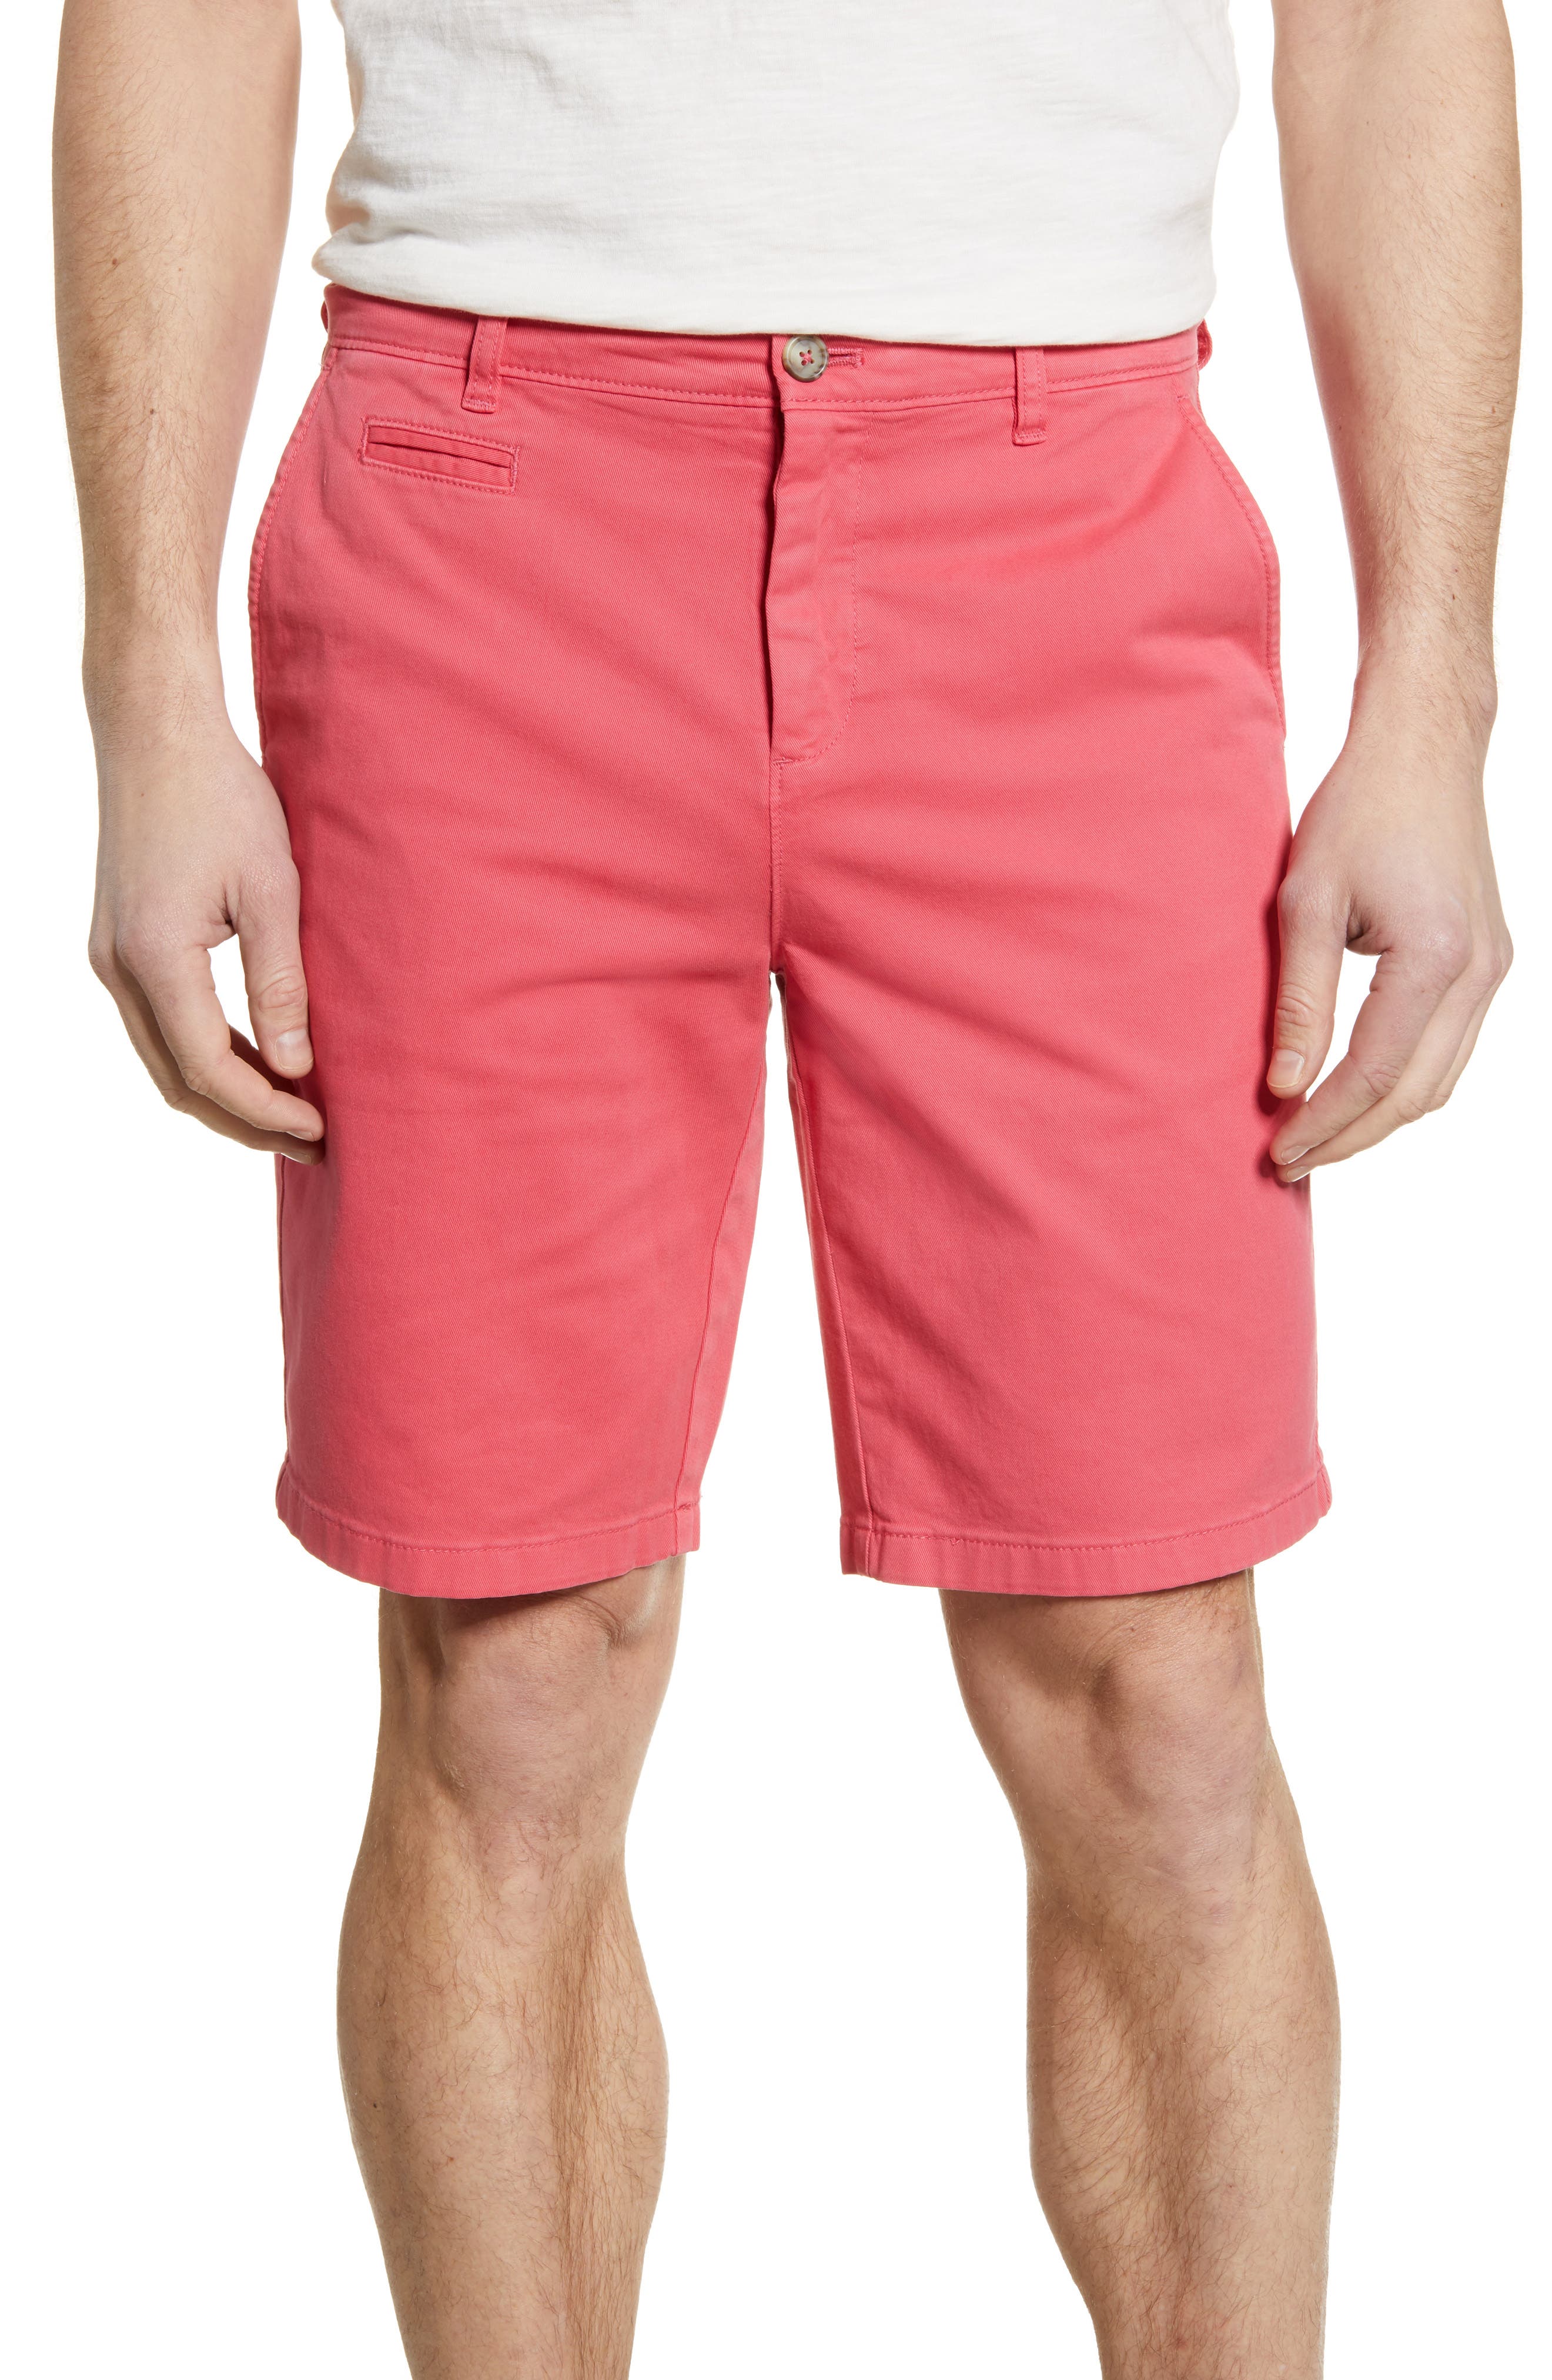 mens shorts pink